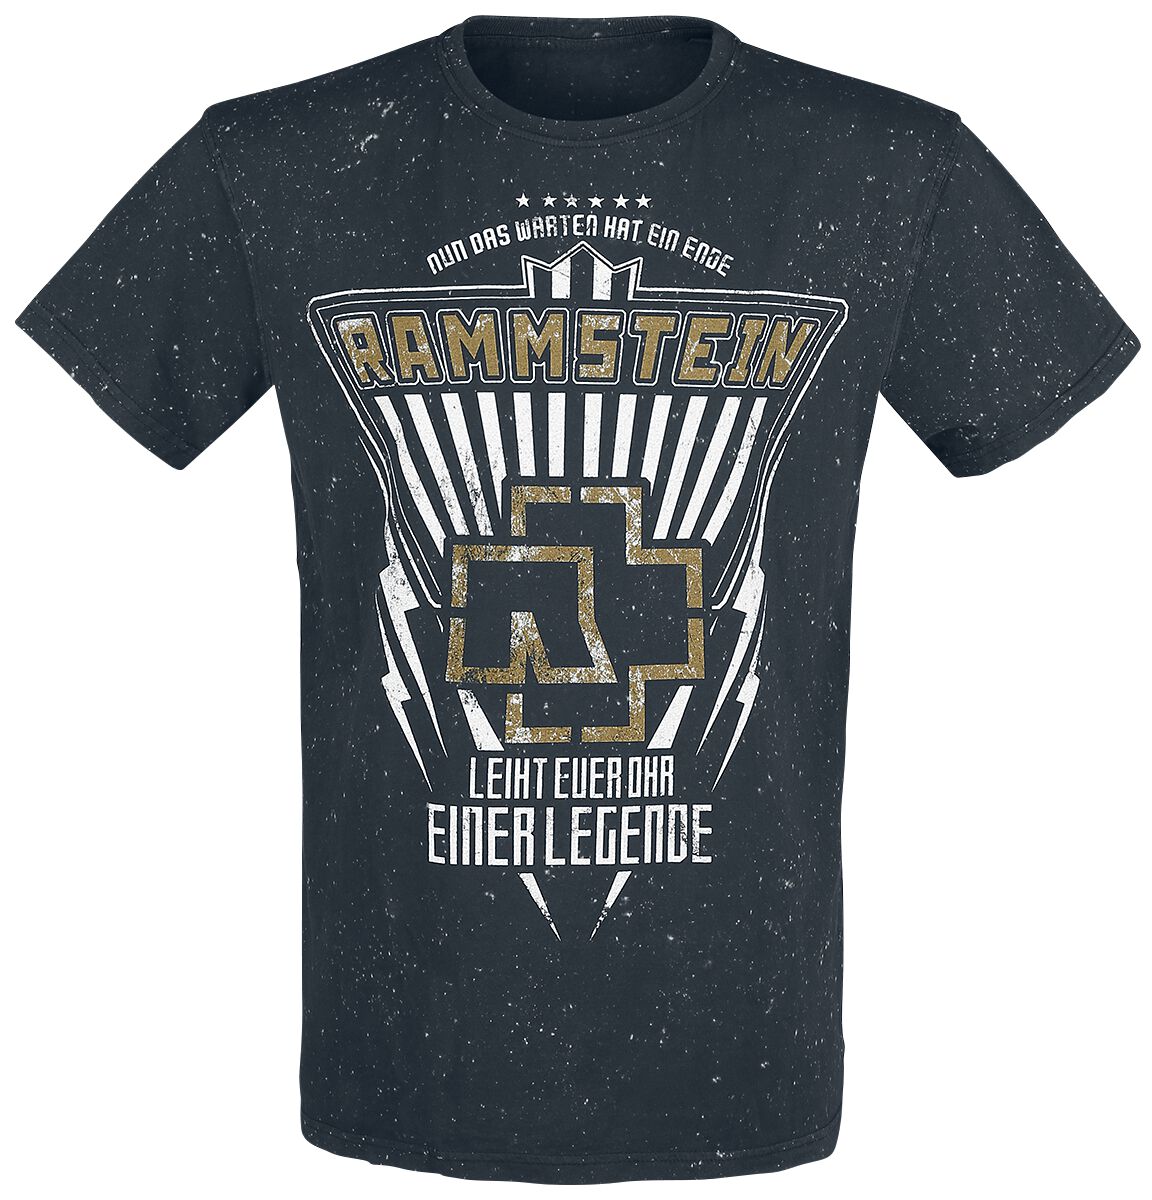 Rammstein T-Shirt - Legende - S bis 4XL - für Männer - Größe M - schwarz  - Lizenziertes Merchandise!